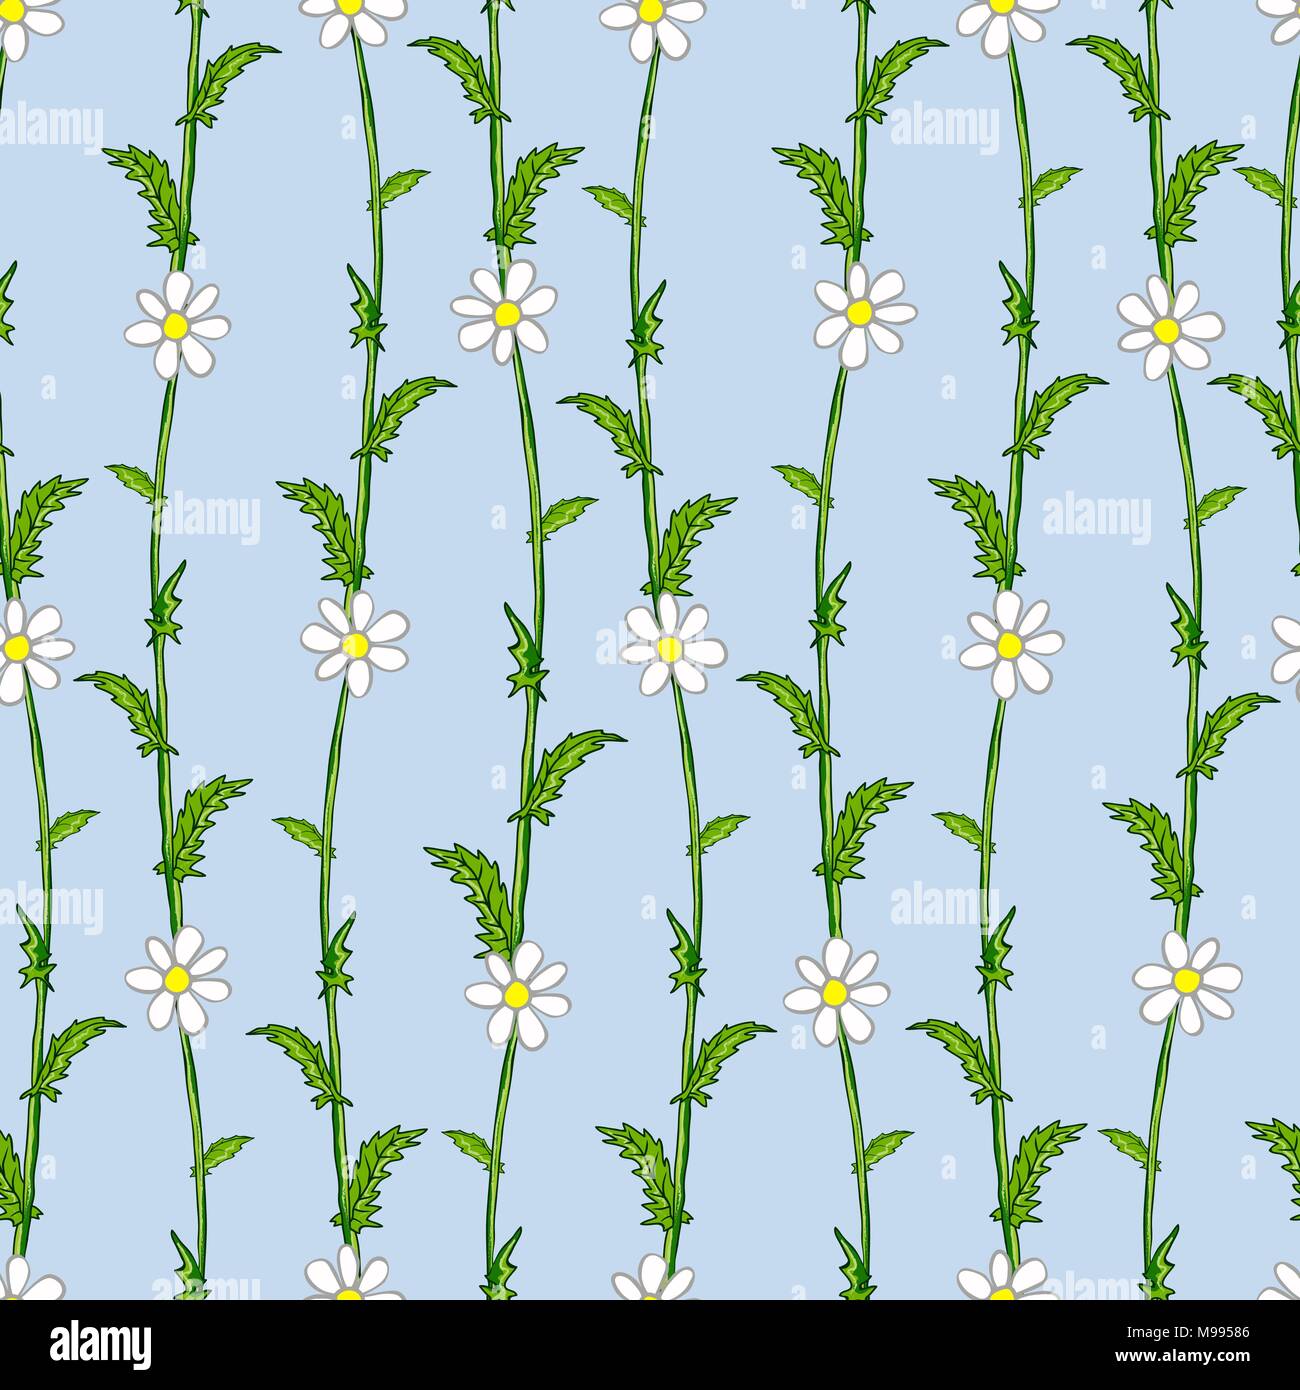 Nahtlose Muster der weißen Gänseblümchen auf grünen Stengel im Stil der Provence Stock Vektor